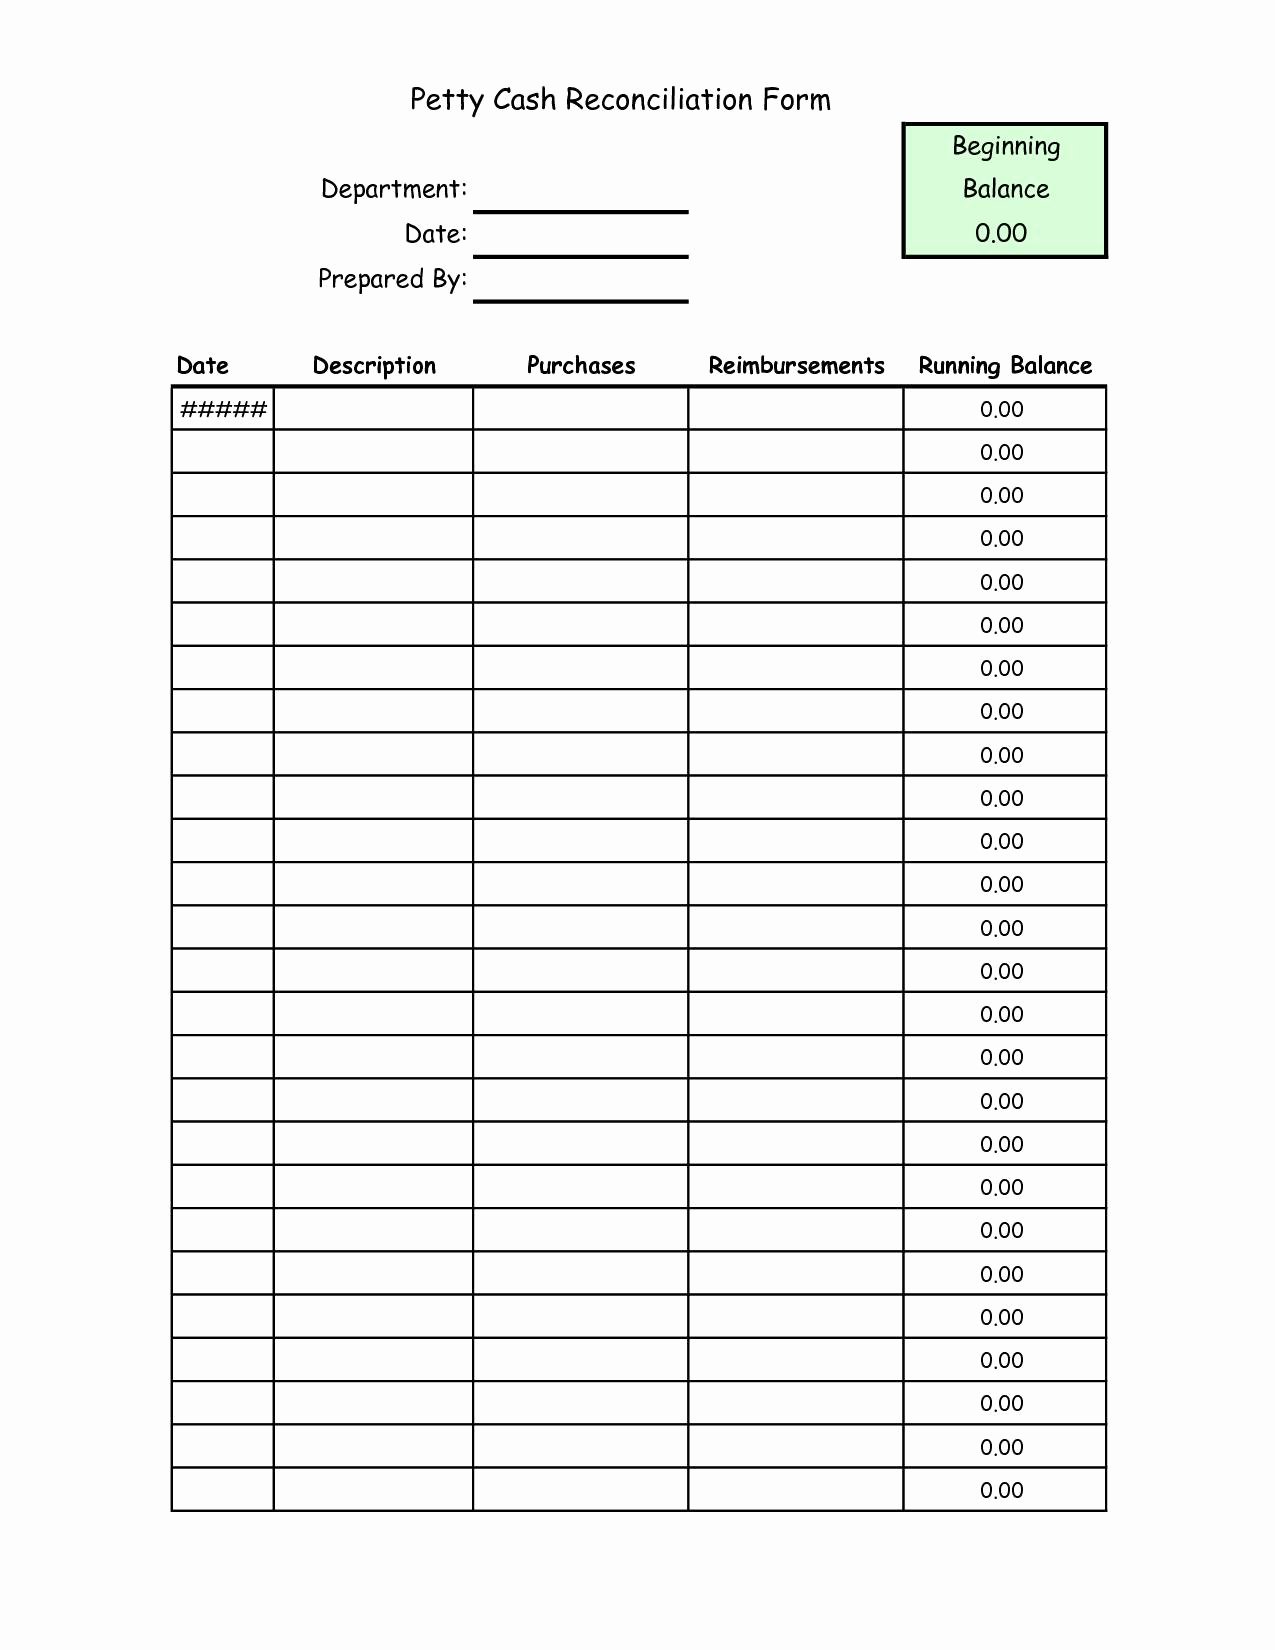 Daily Cash Sheet Template Excel Unique Cash Reconciliation Template